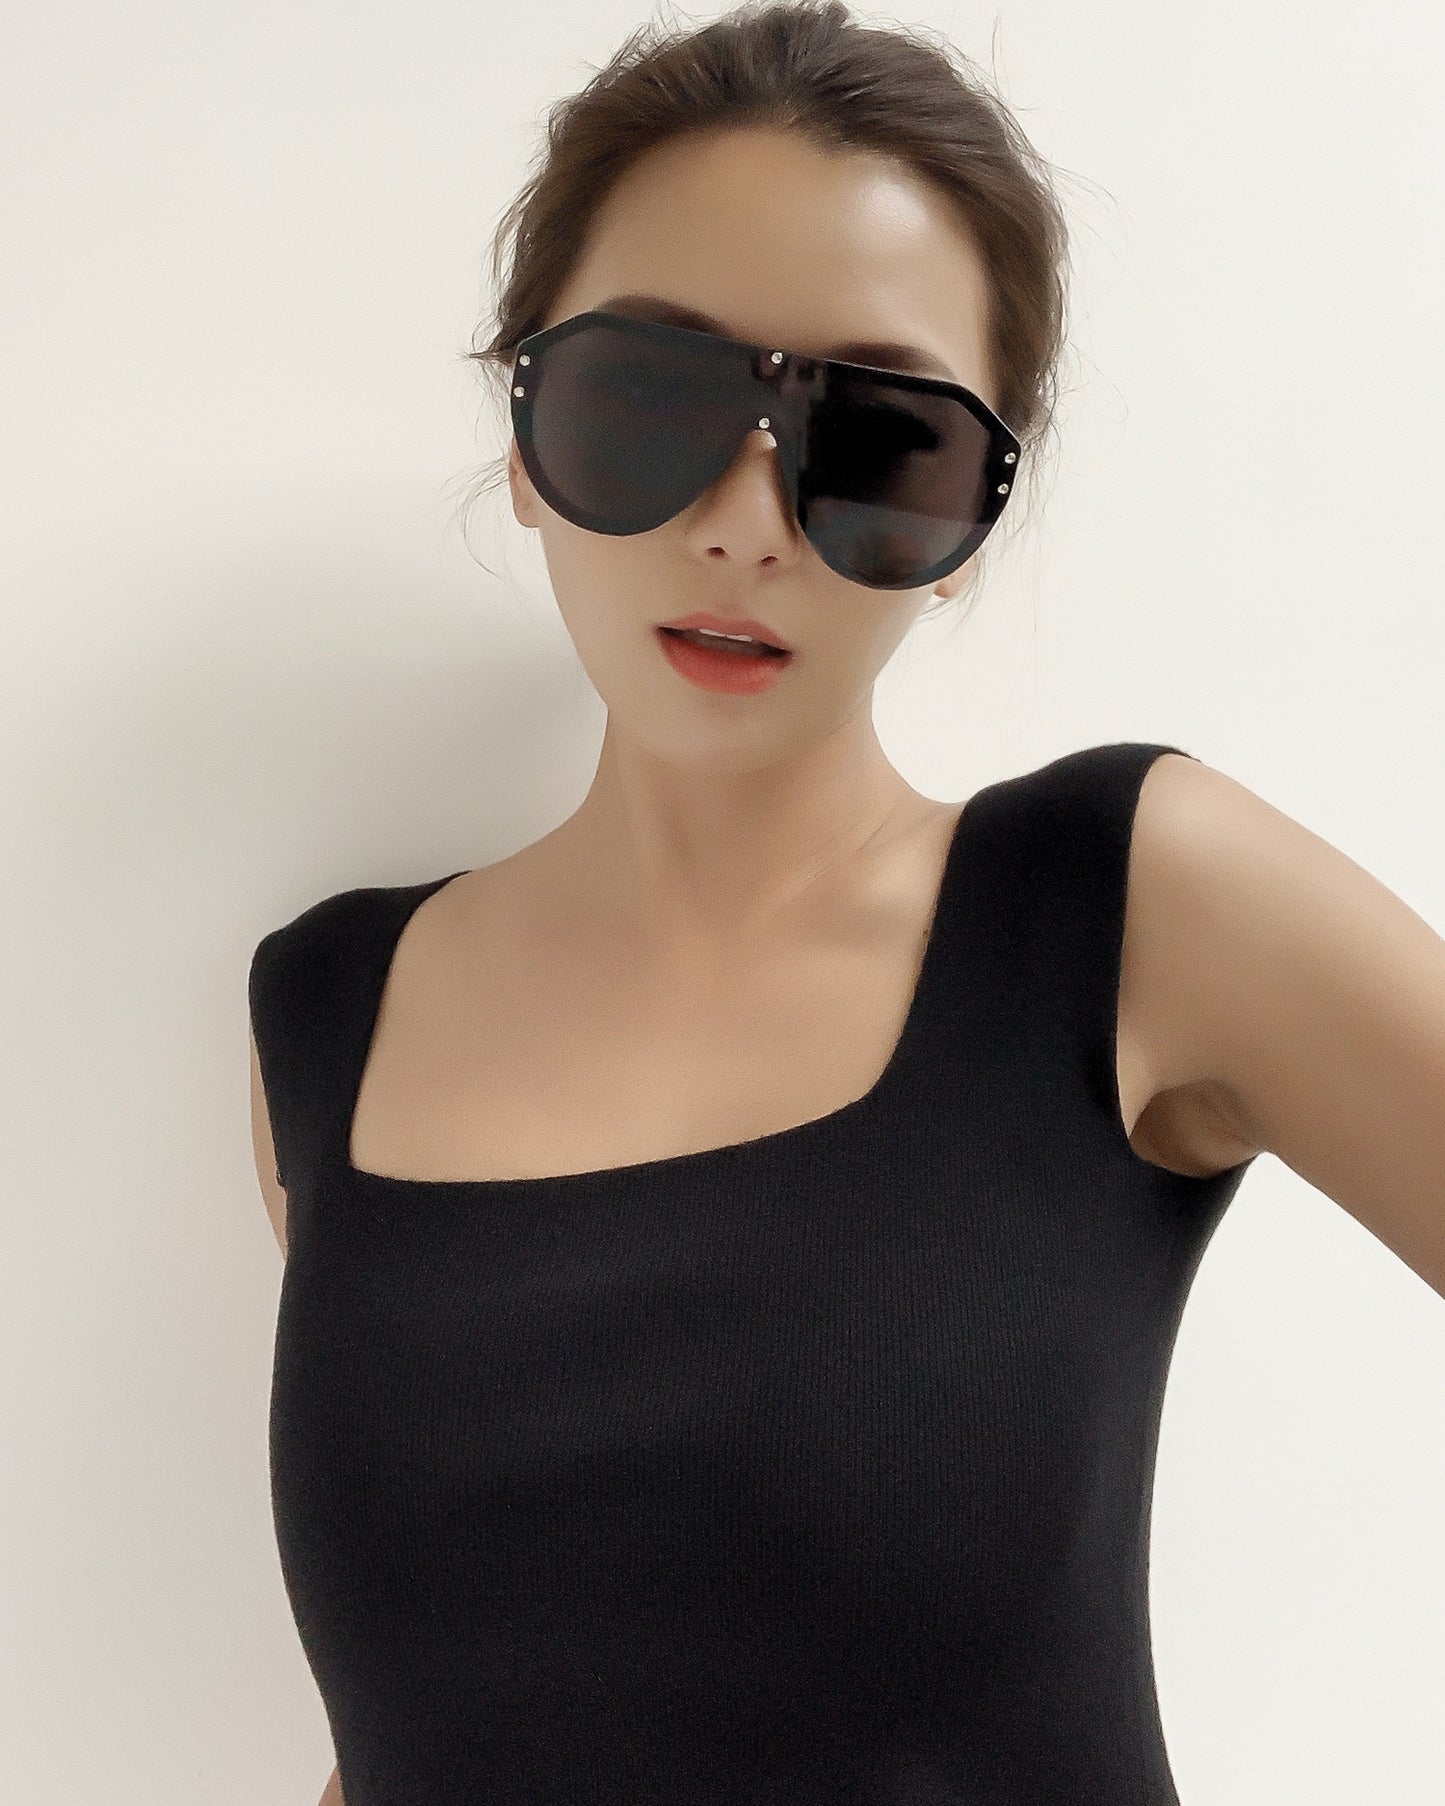 black with dark grey lens frameless sunglasses *pre-order*